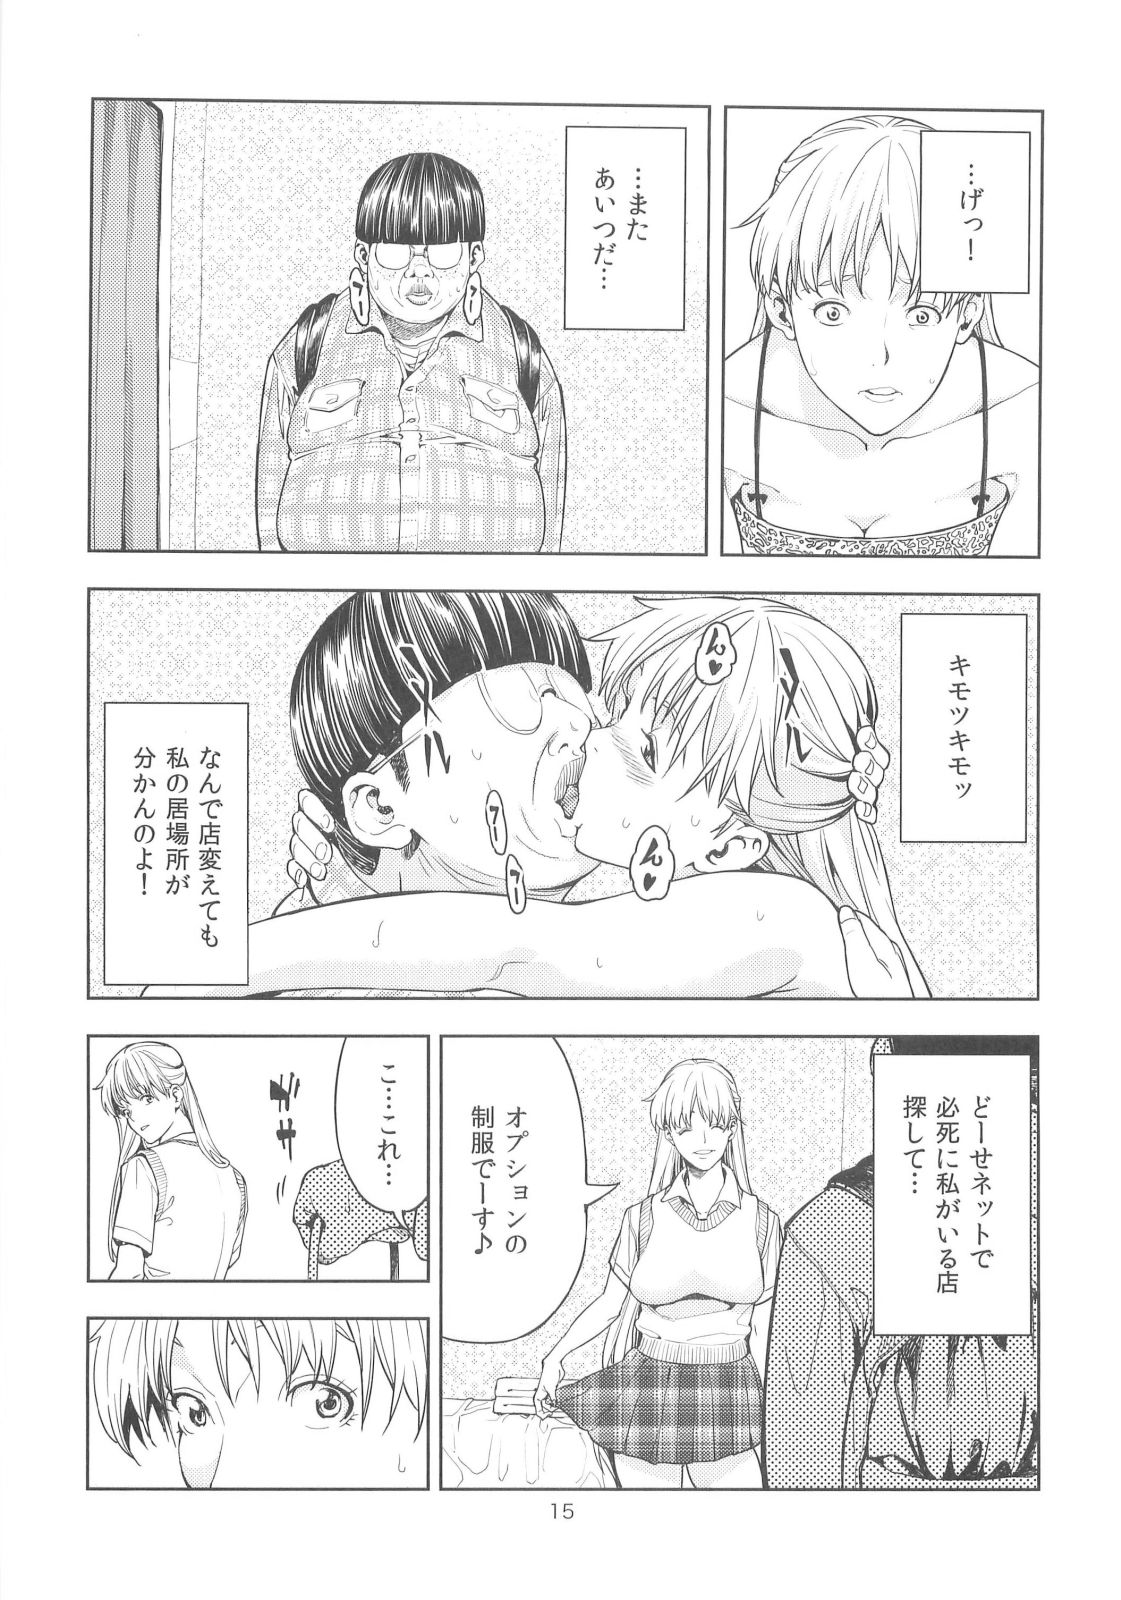 【セーラームーン】風俗嬢の美奈子はゲス男に弱みを握られ、目隠し状態でハメ撮りされることに...。の画像14枚目